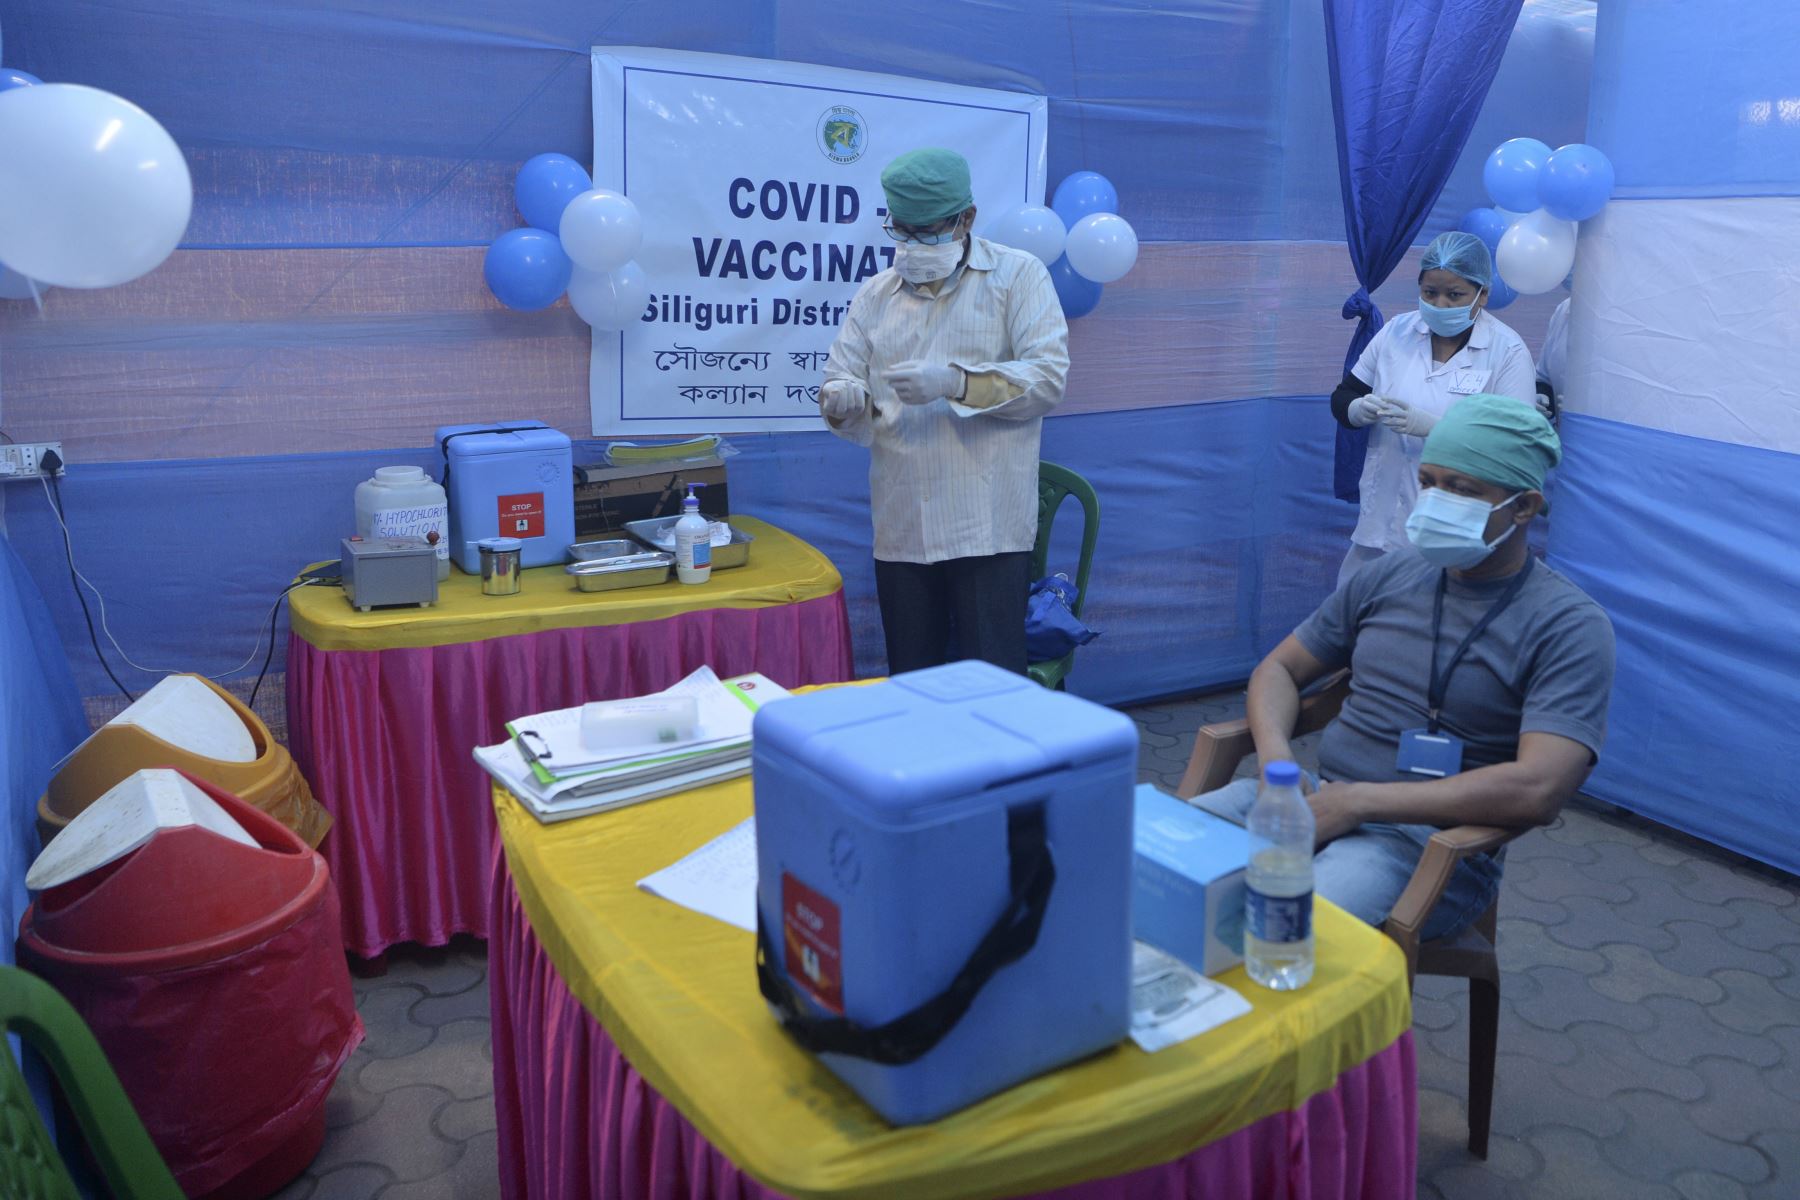 Los funcionarios de salud se sientan dentro de un centro de vacunación mientras comienza el despliegue de la vacuna contra el coronavirus Covid-19 en un hospital en Siliguri.
Foto: AFP